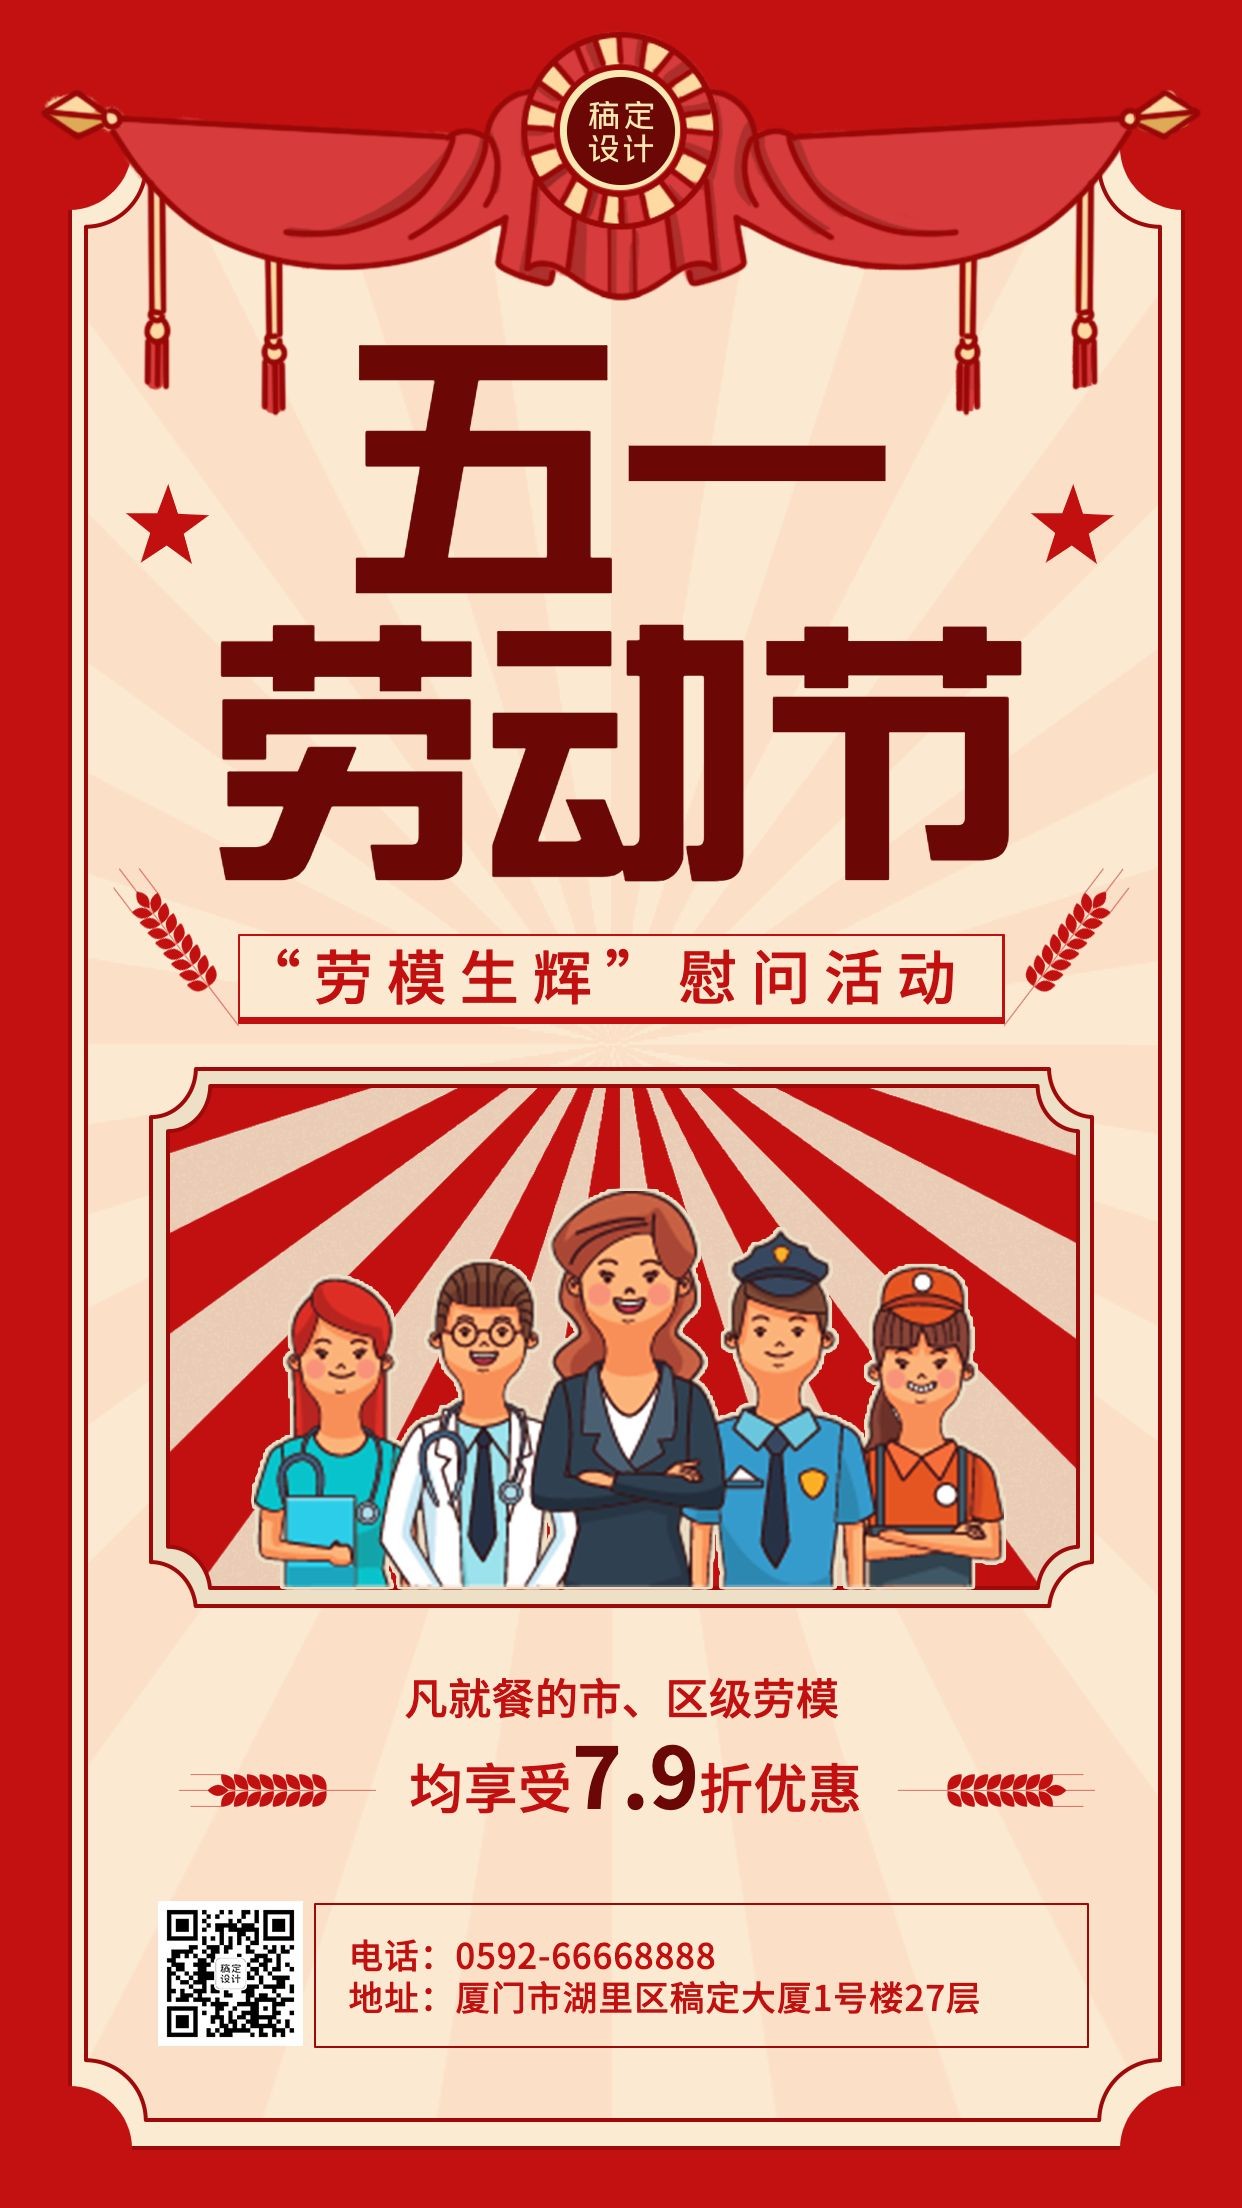 劳动节节日促销排版手机海报